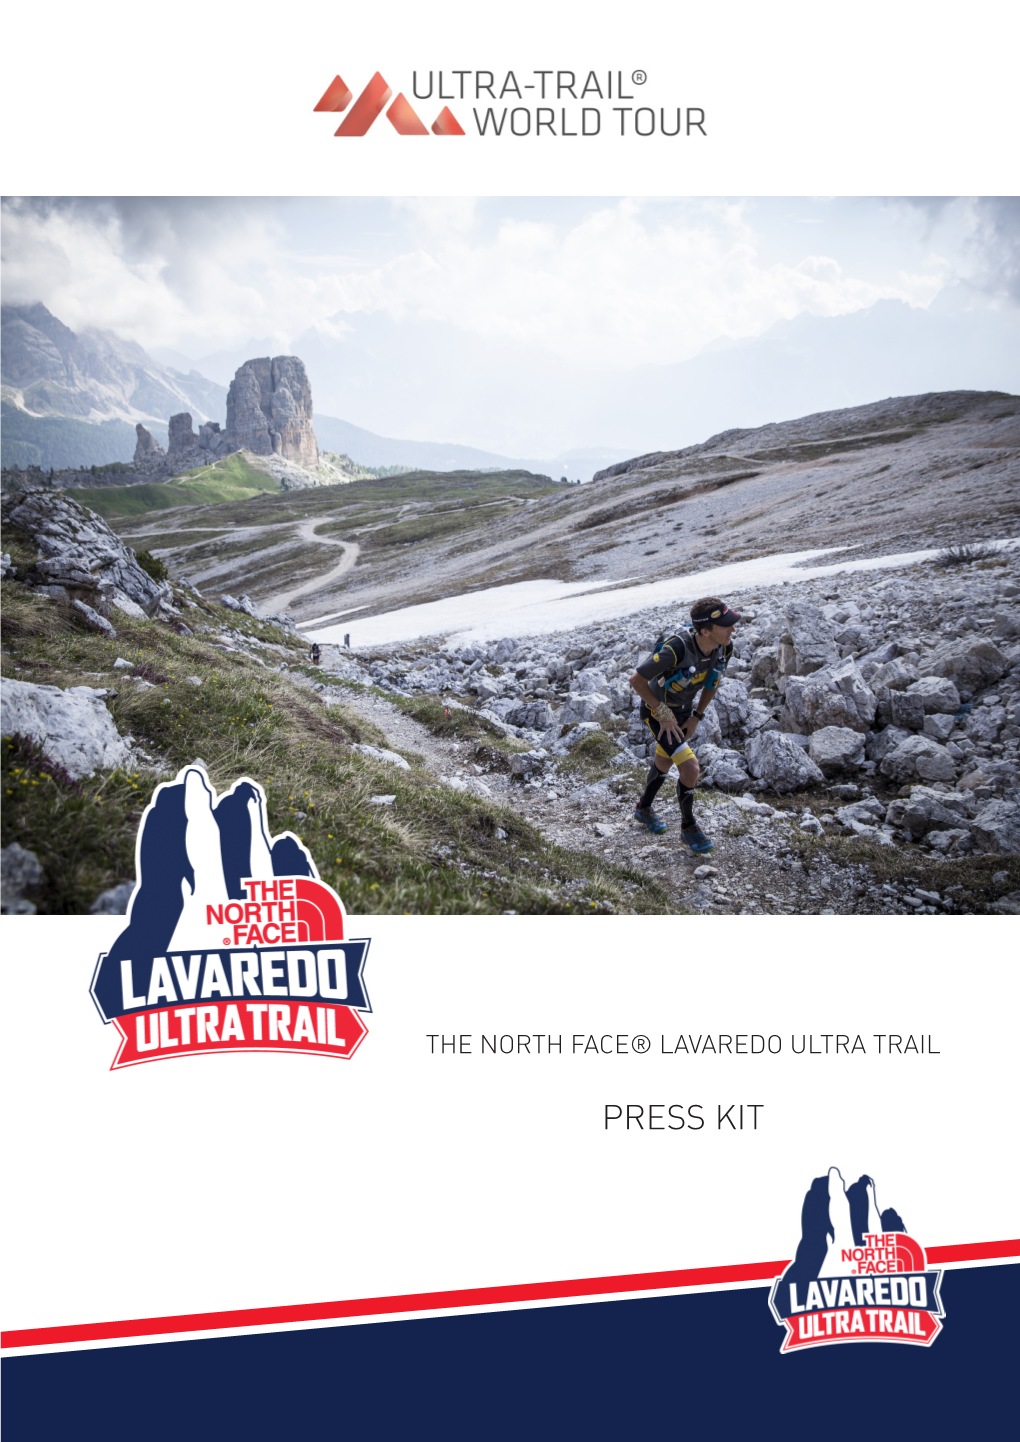 PRESS KIT the North Face® Lavaredo Ultra Trail 11A Edizione 22-25 Giugno 2017 Ore 23:00 119 Km 5.850 M+